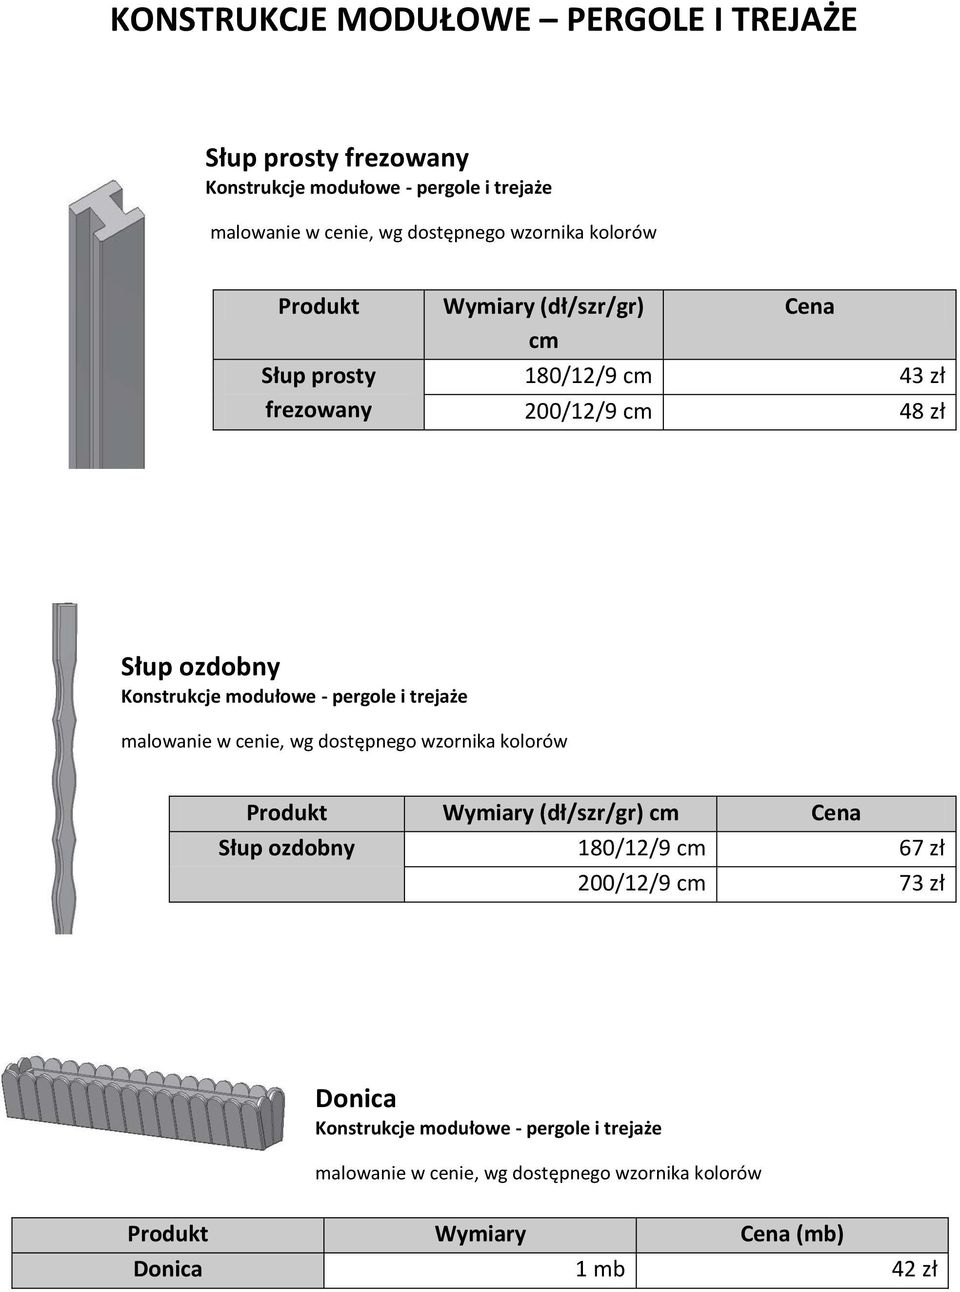 Konstrukcje modułowe - pergole i trejaże Produkt Wymiary (dł/szr/gr) cm Cena Słup ozdobny 180/12/9 cm 67